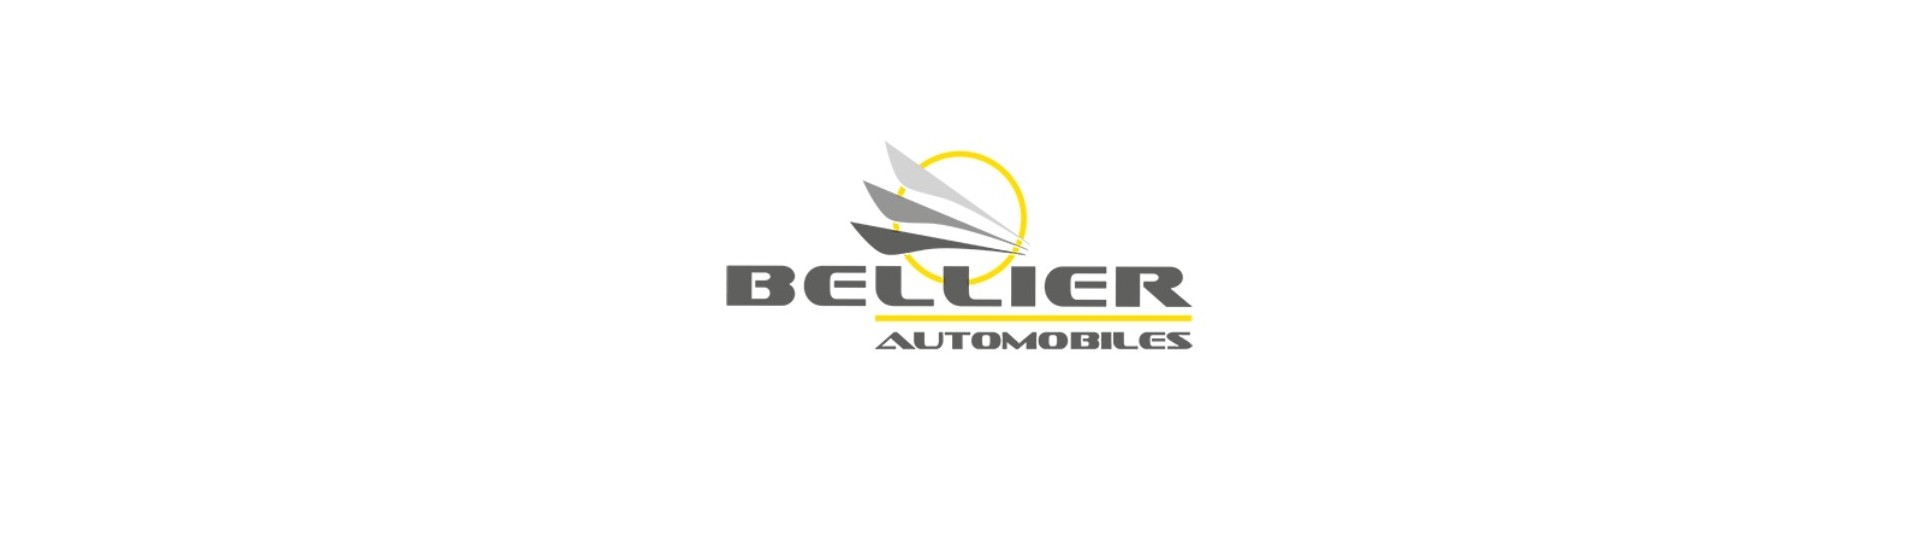 Pacote de rodas ao melhor preço para carros sem licença Bellier